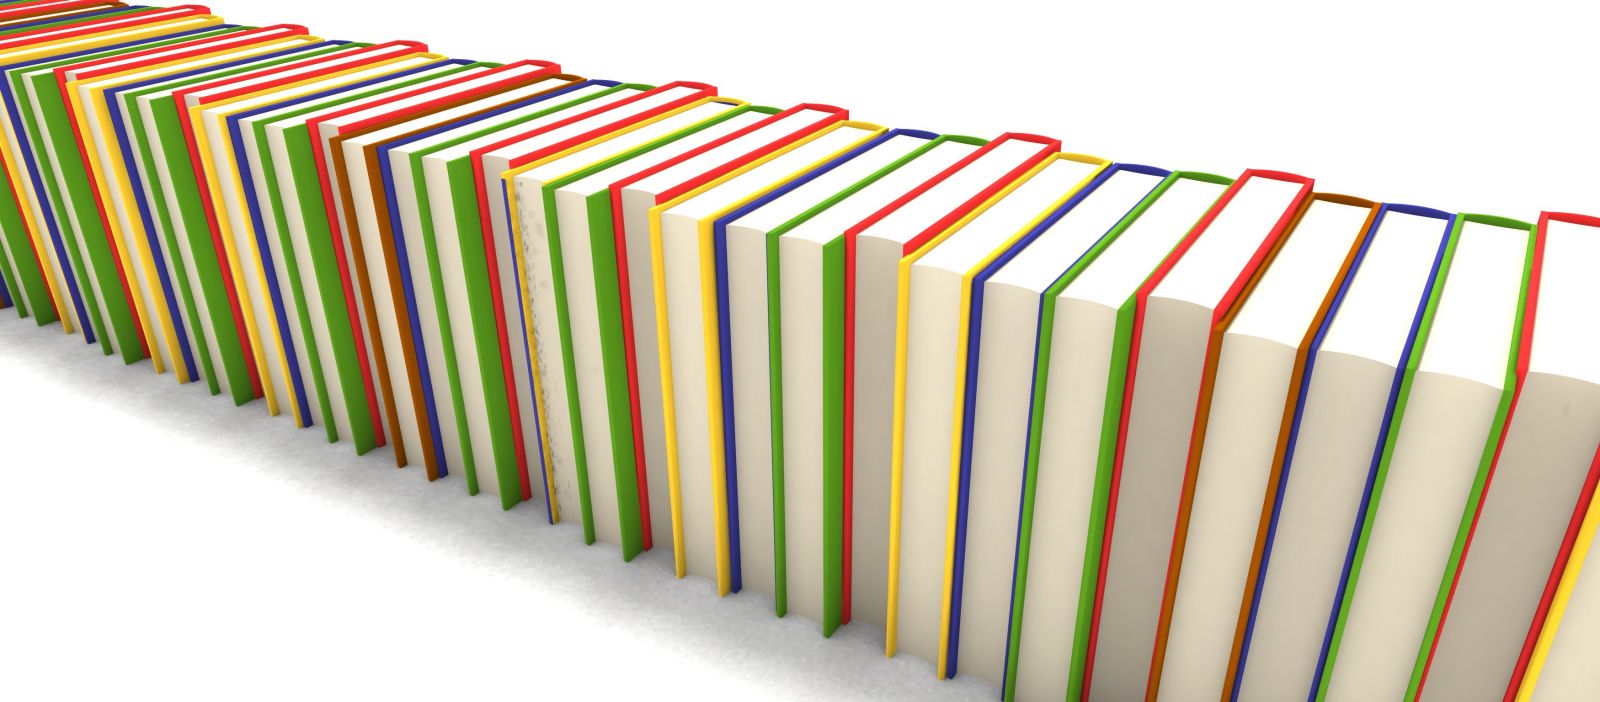 Zdjęcie książek z kolorowymi okładkami, ustawionych w rzędzie.